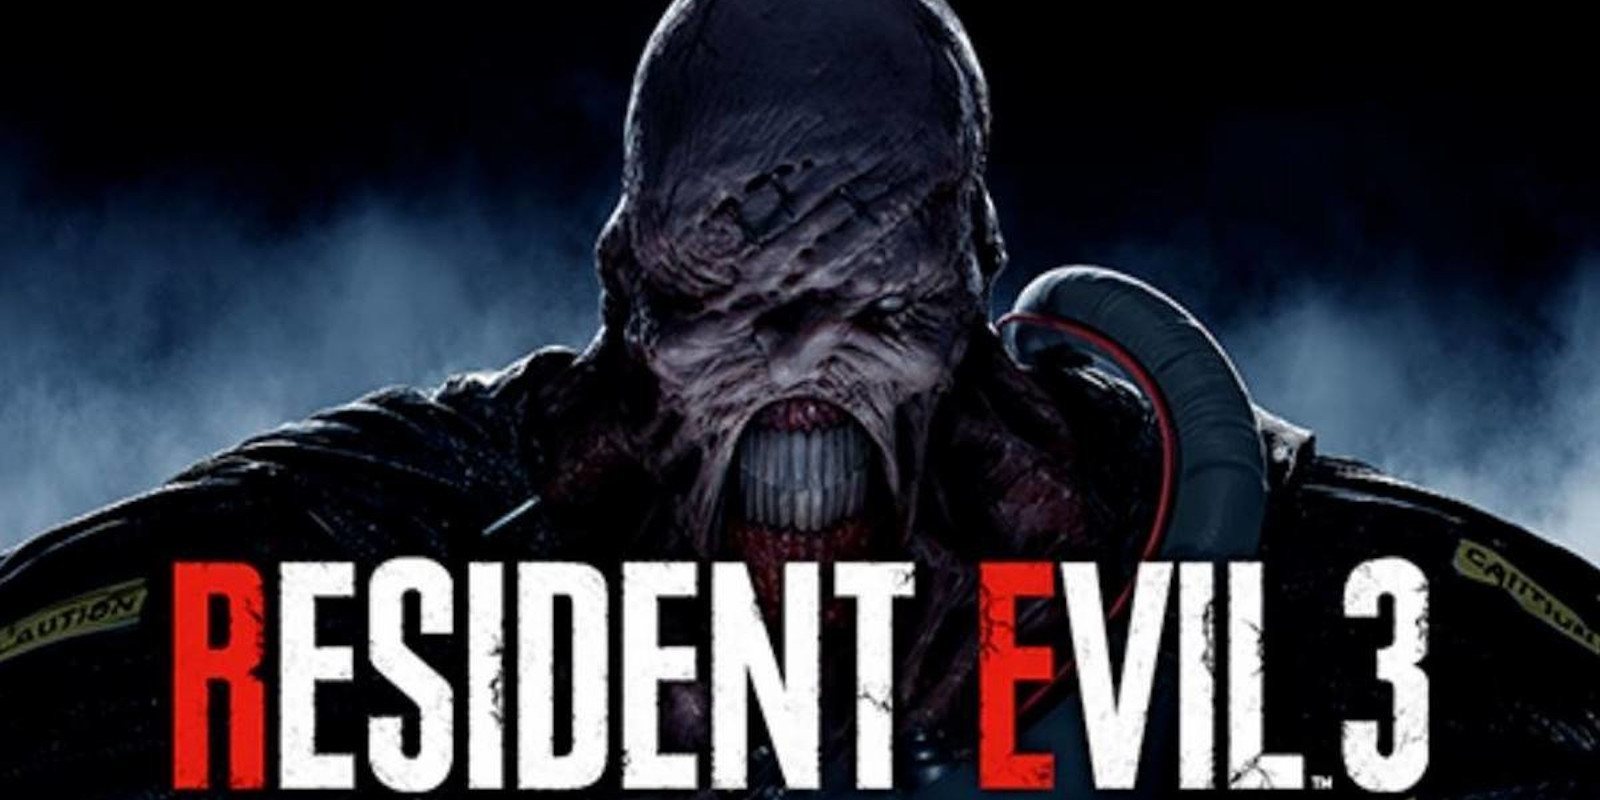 'Resident Evil 3 Remake' confirmado, fecha de salida 3 de abril del 2020